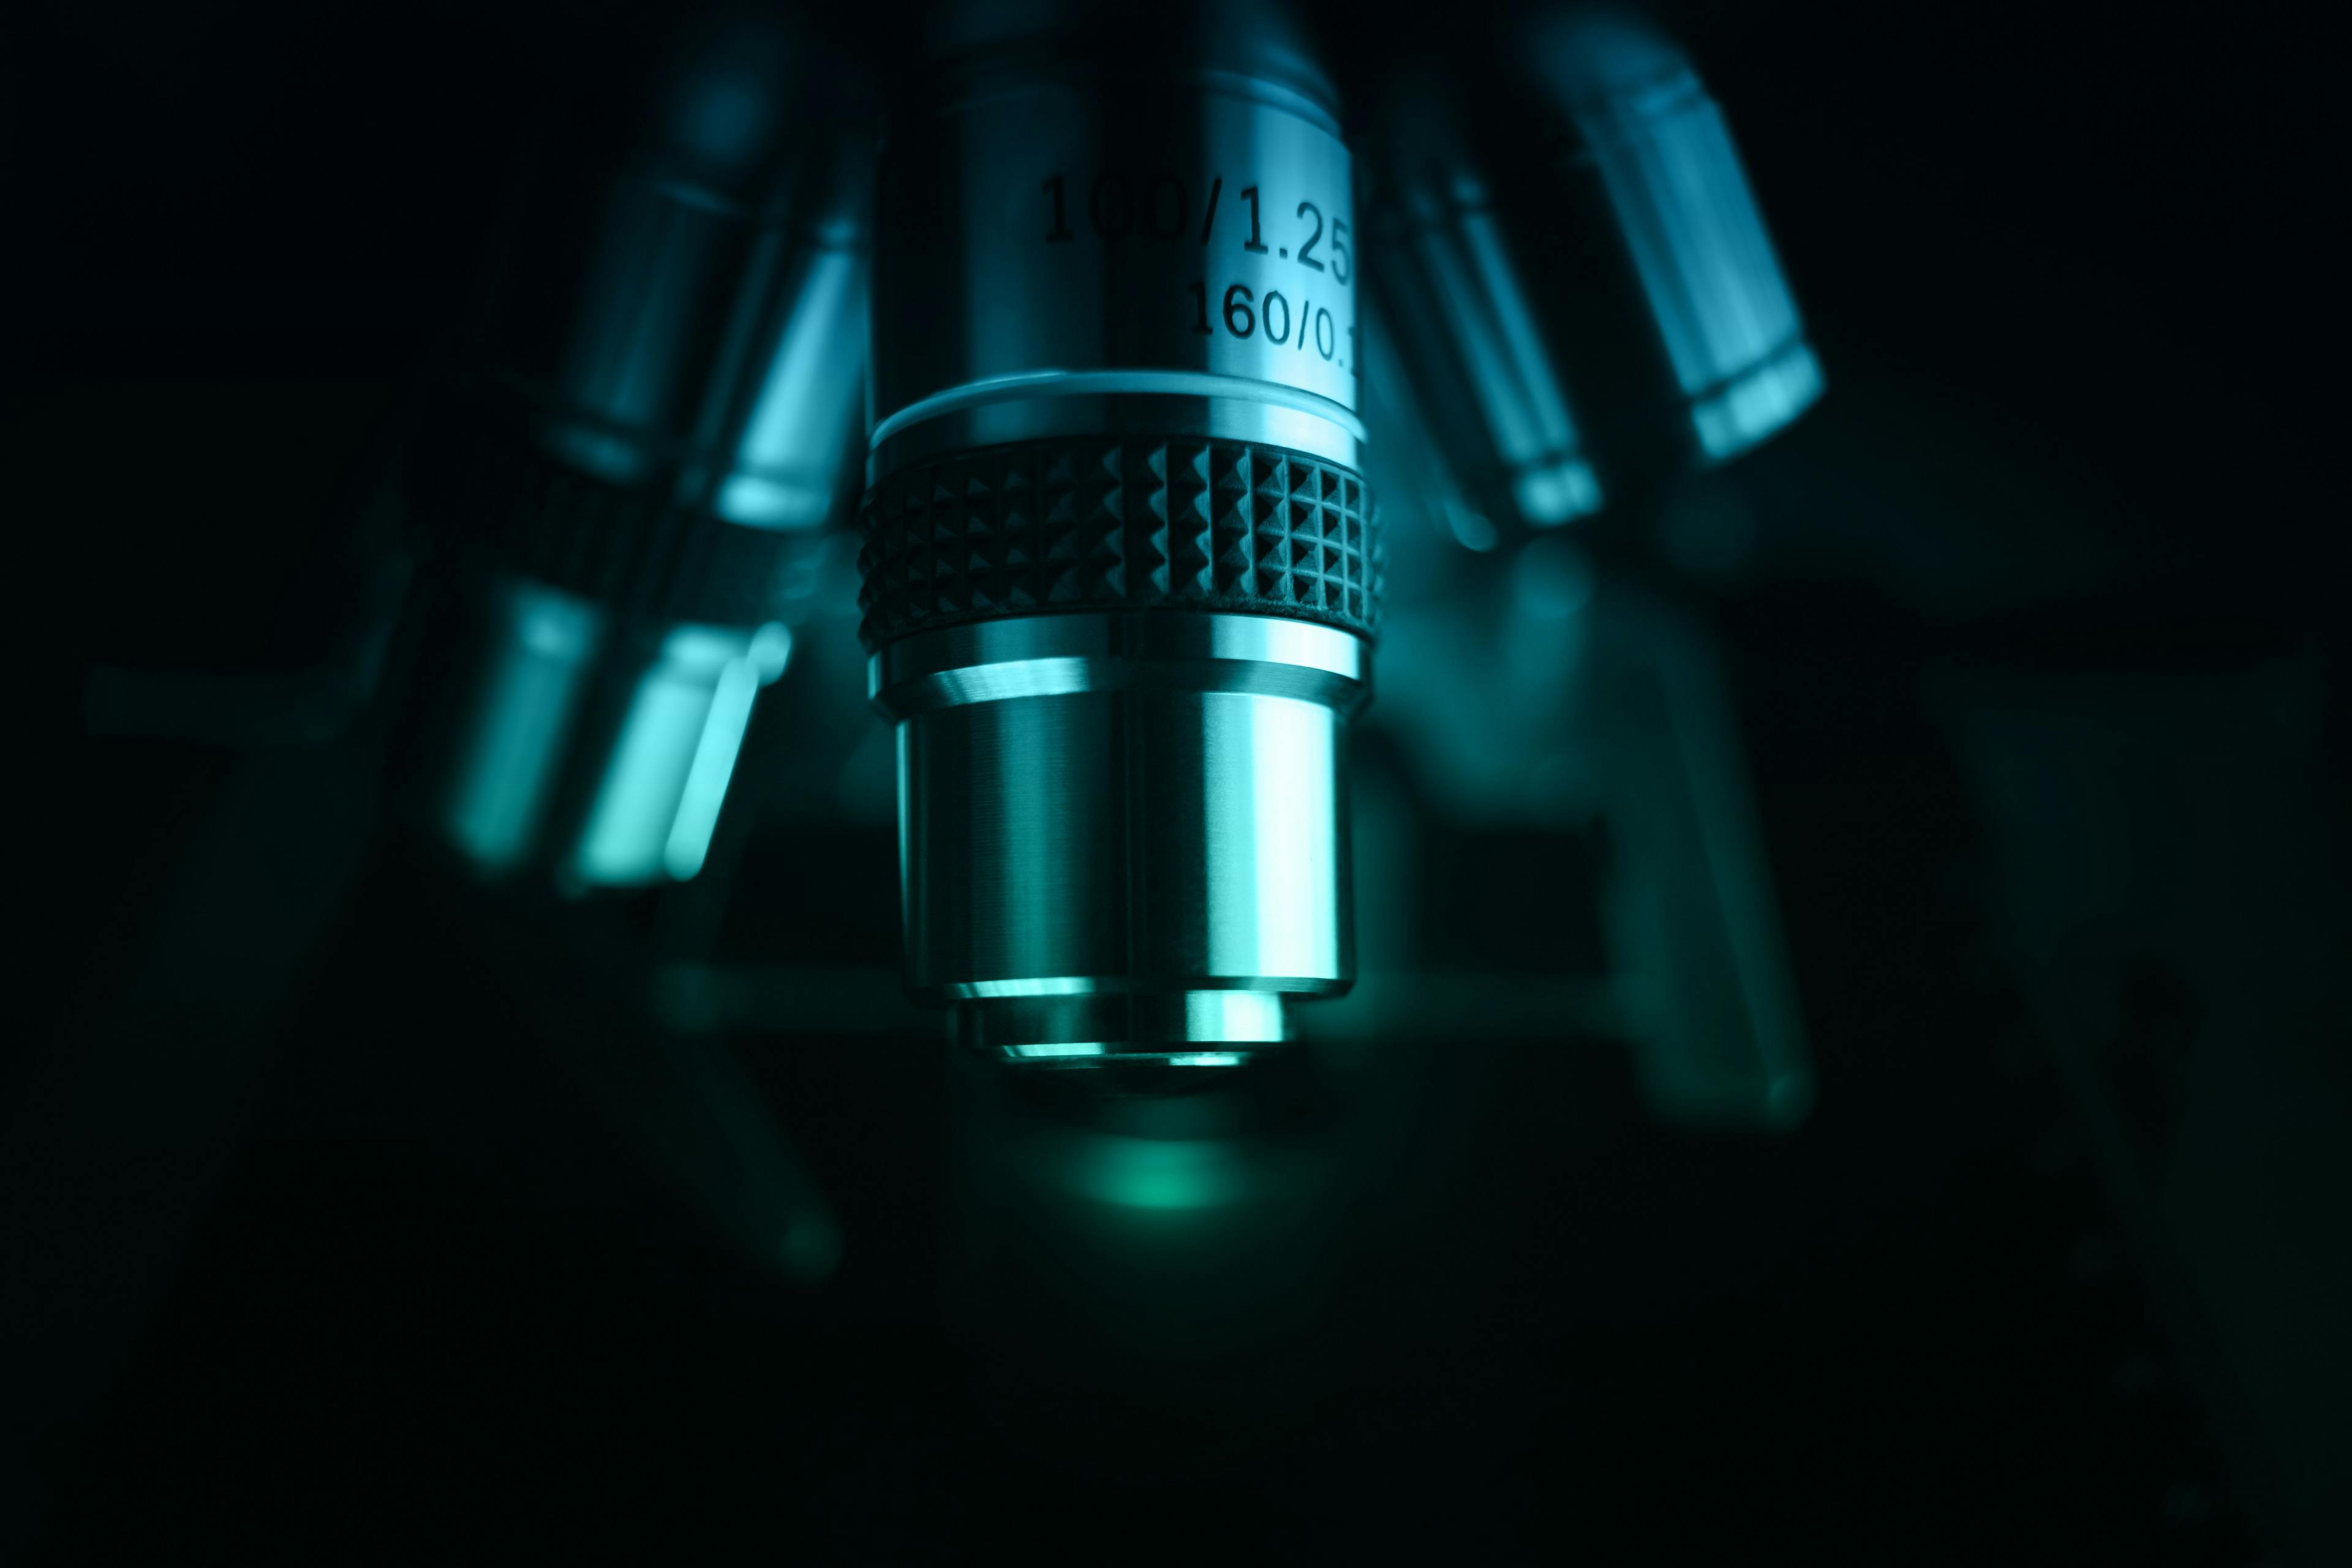 microscope glowing in the dark